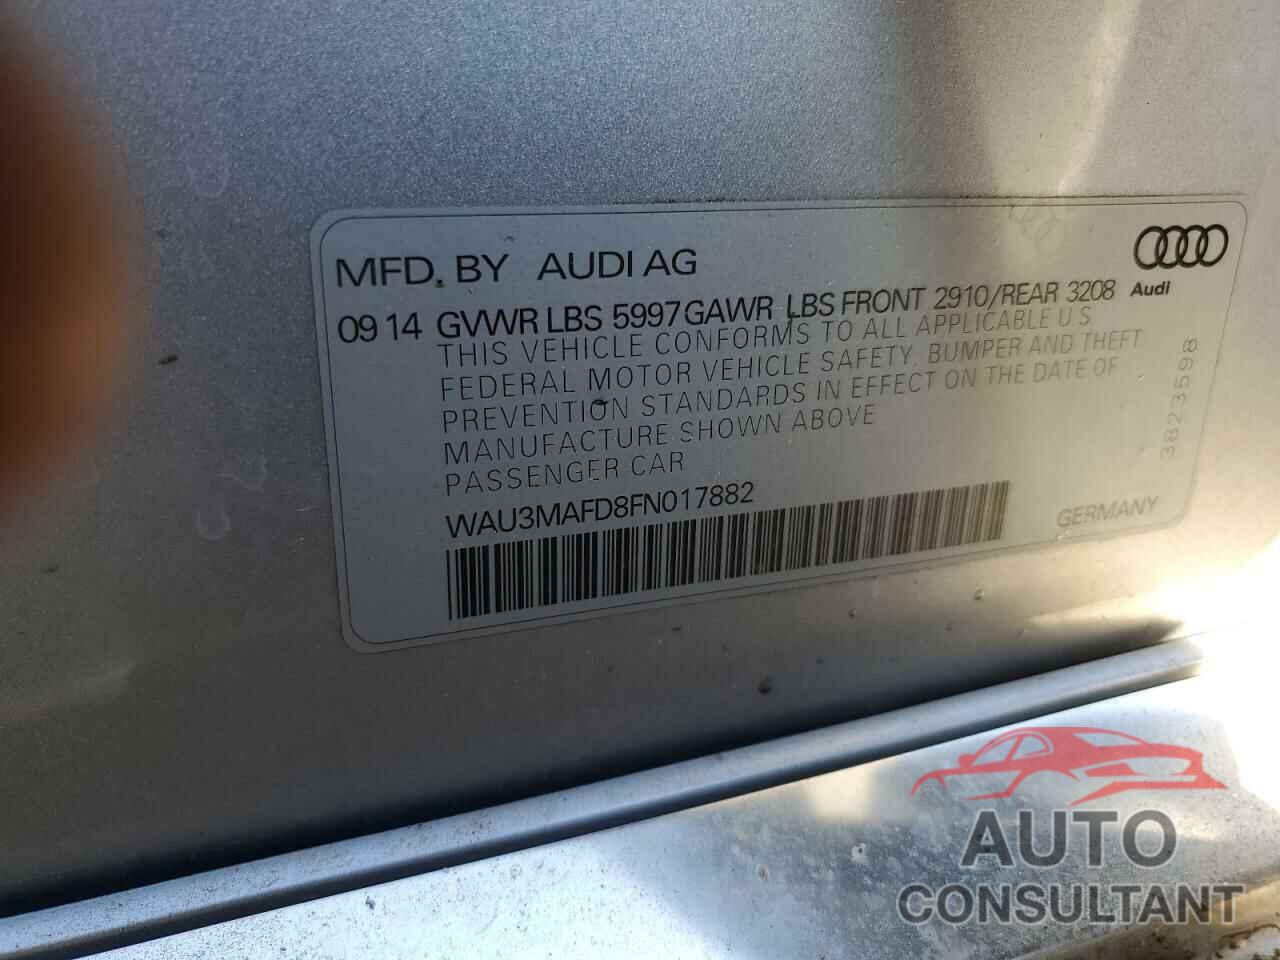 AUDI A8 2015 - WAU3MAFD8FN017882